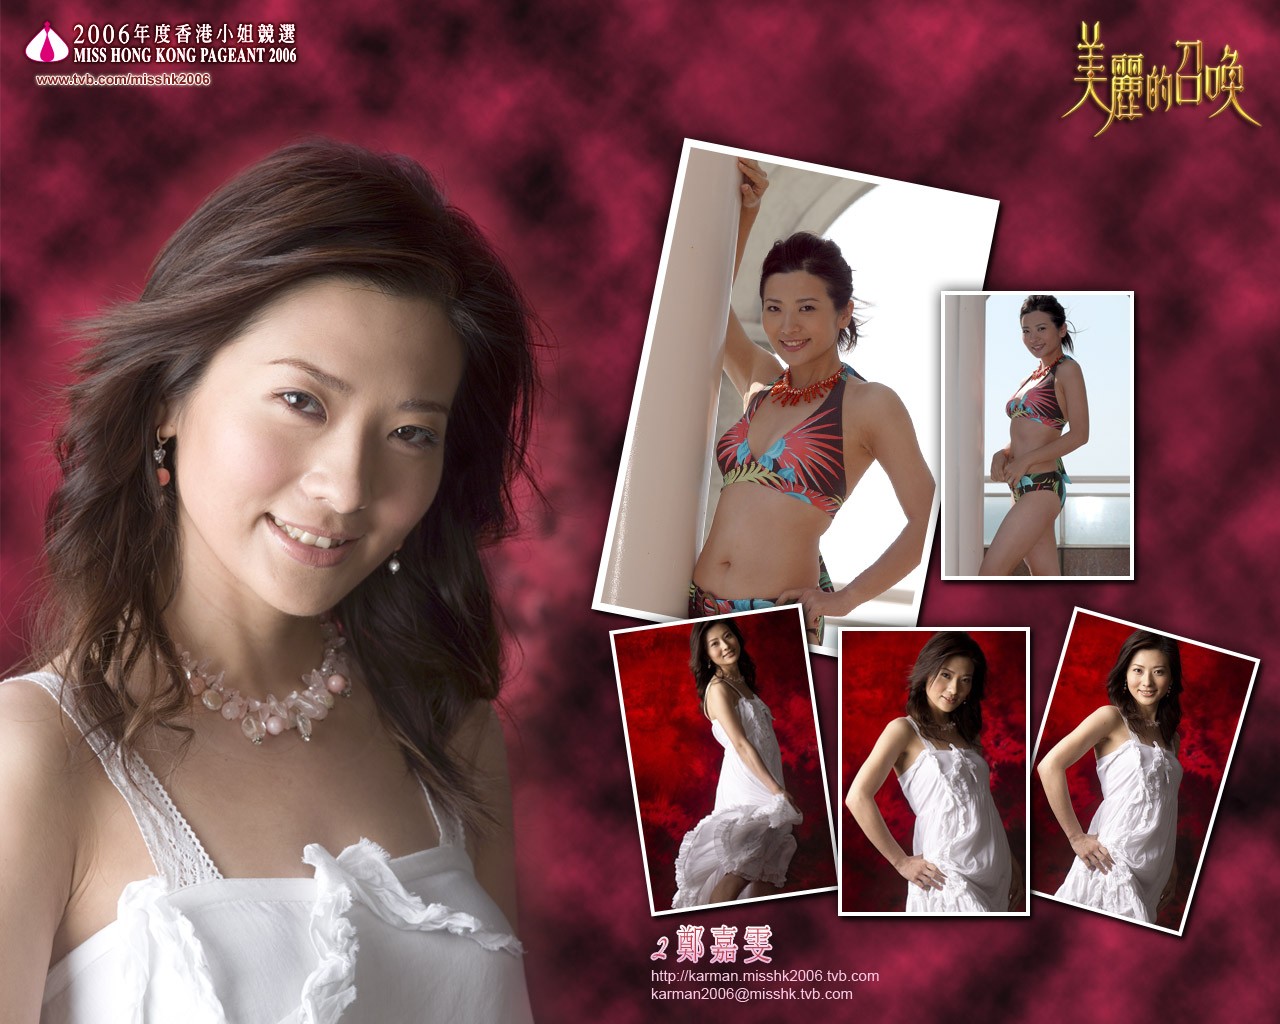 Miss Hong Kong 2006 Album #15 - 1280x1024